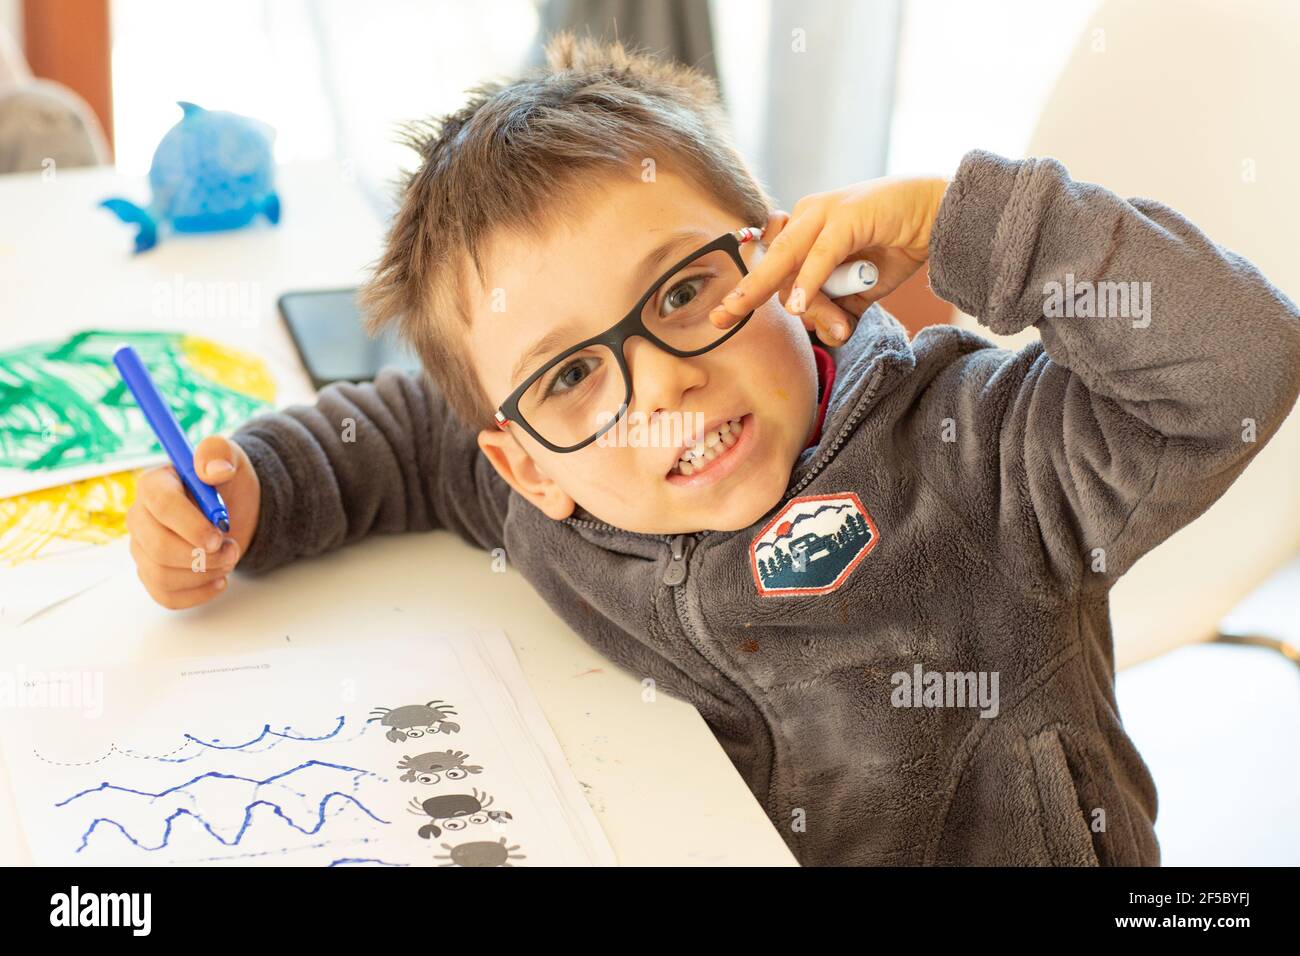 Unter Quarantäne Spaß. Kleiner Junge, der während des Coronavirus-Ausbruchs malte und Hausaufgaben machte. Lebensstil unter Corona-Virus. Stockfoto